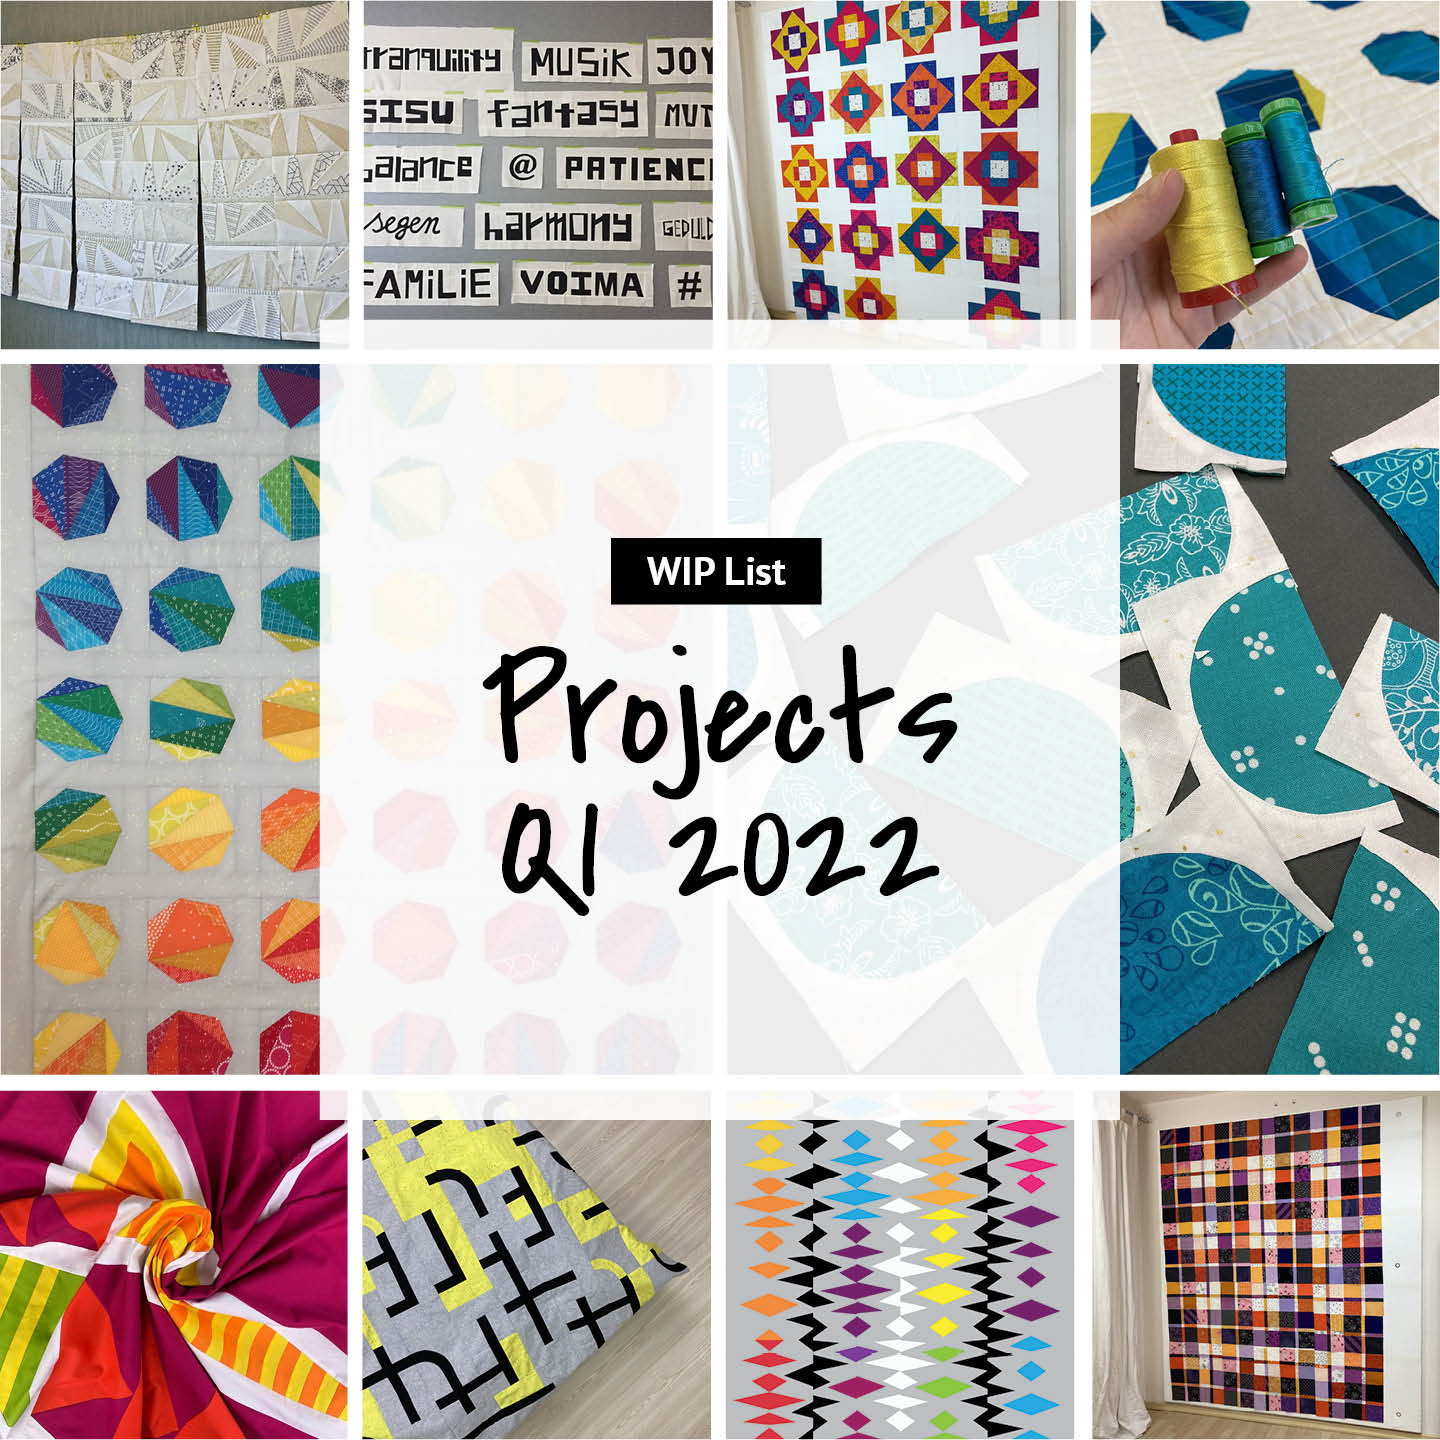 Projects Q1 2022 | mellmeyer.de